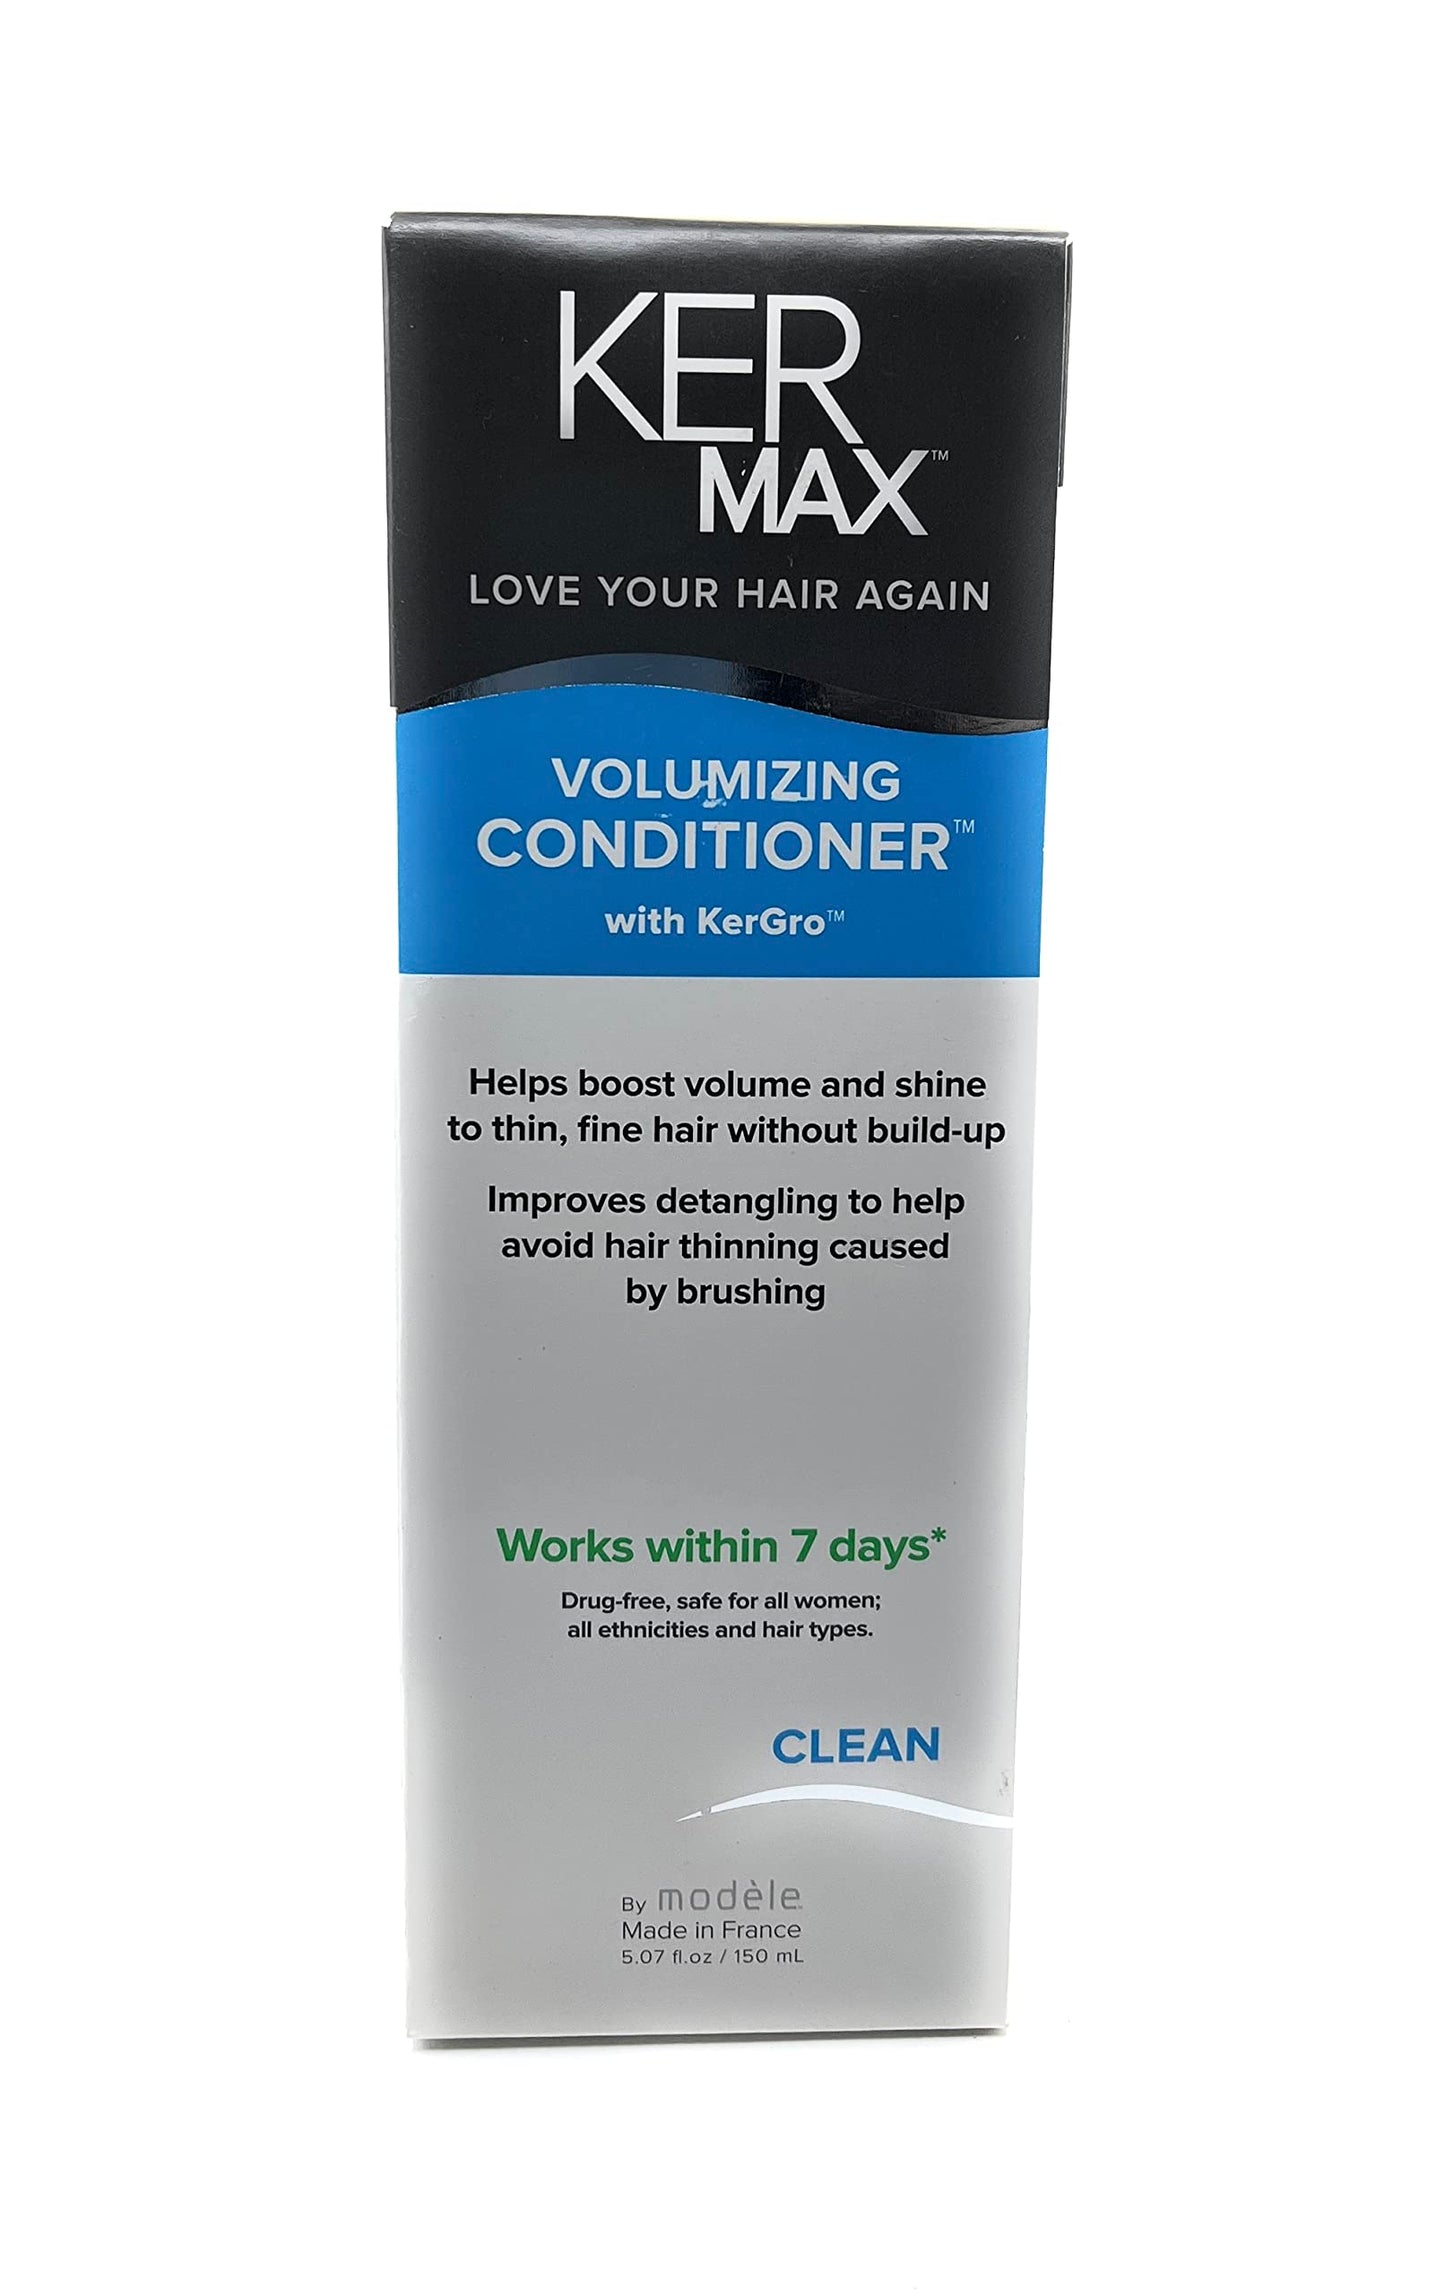 KERMAX Volumizing Hair Conditioner 5.07 fl.oz.